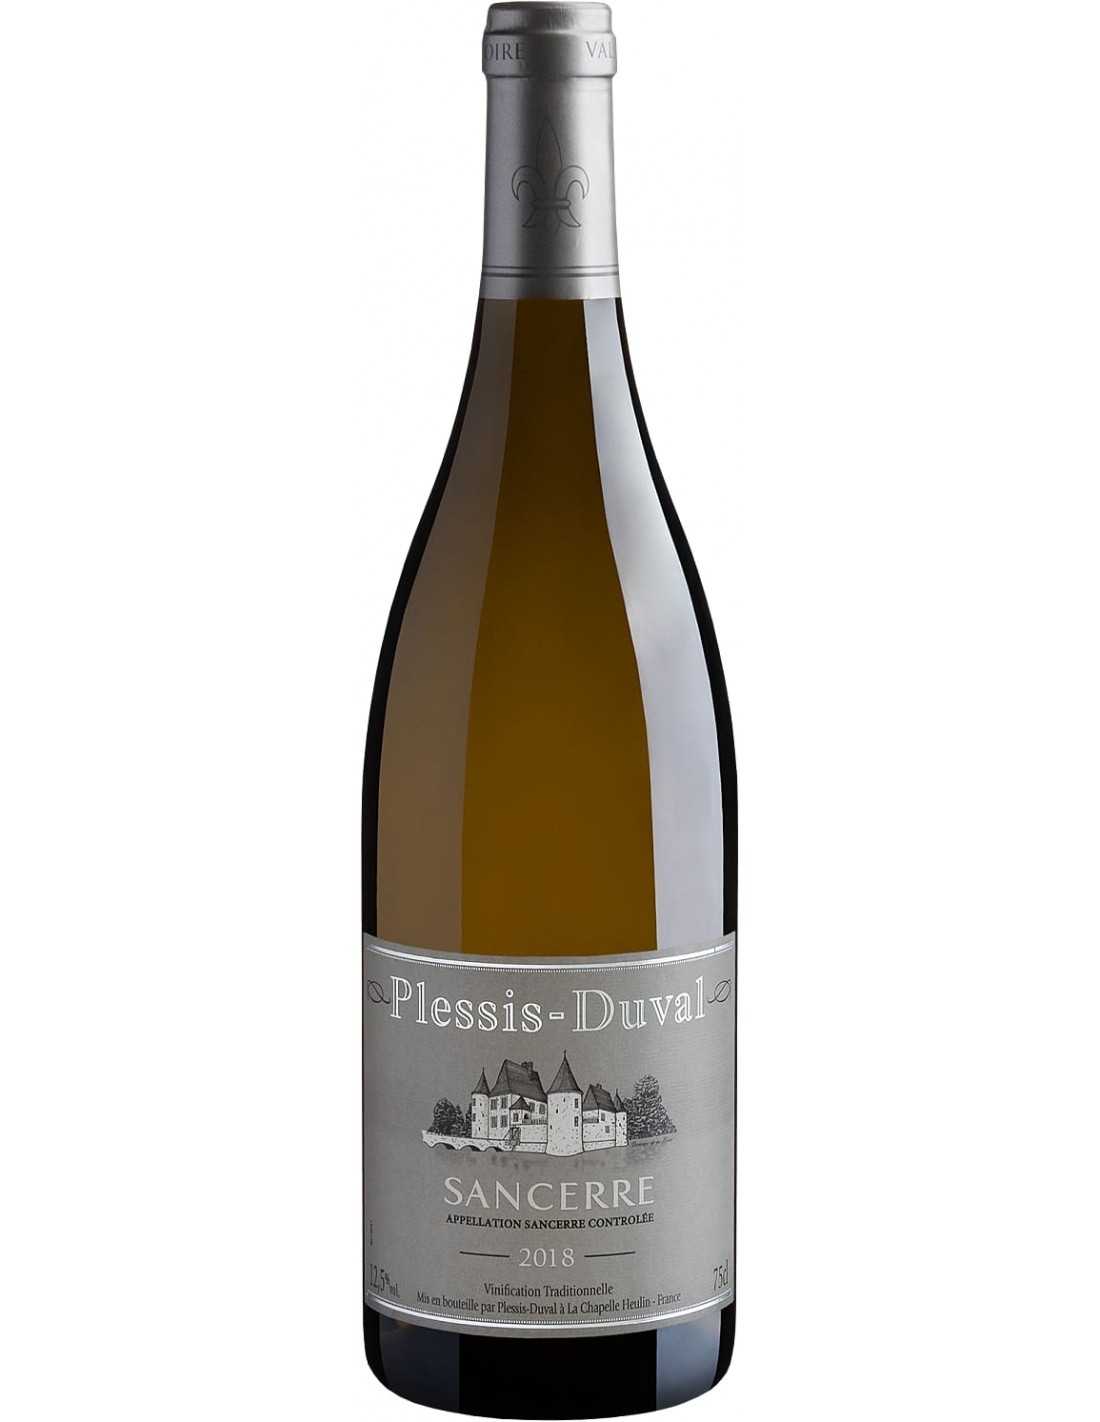 Vin alb, Plessis Duval Sancerre, 12% alc., 0.75L, Franta alcooldiscount.ro